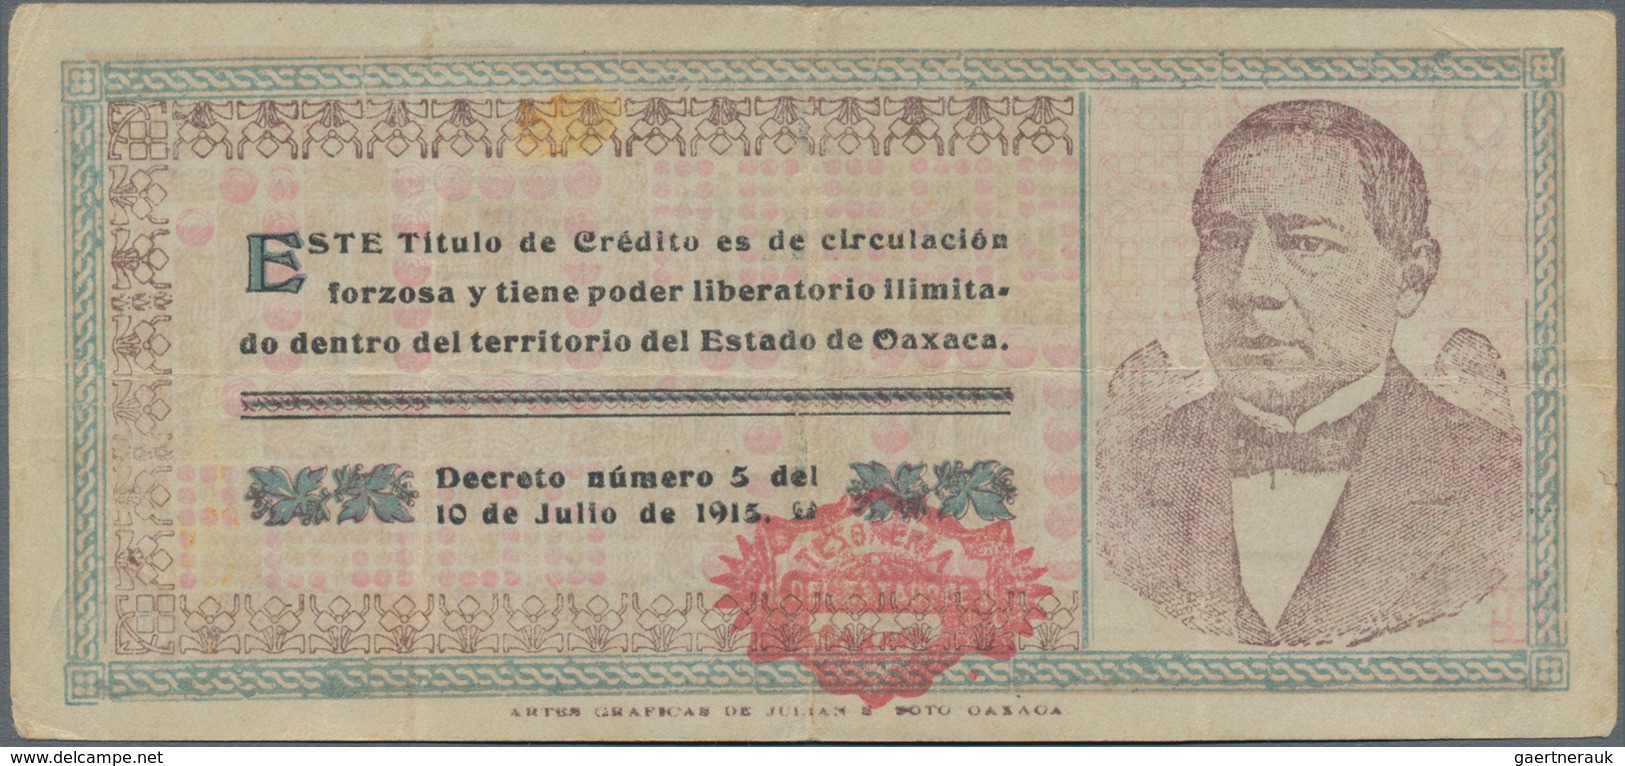 Mexico: Tesorería General Del Estado De Oaxaca 10 Pesos 1915, P.S957a In About XF Condition. - Mexico